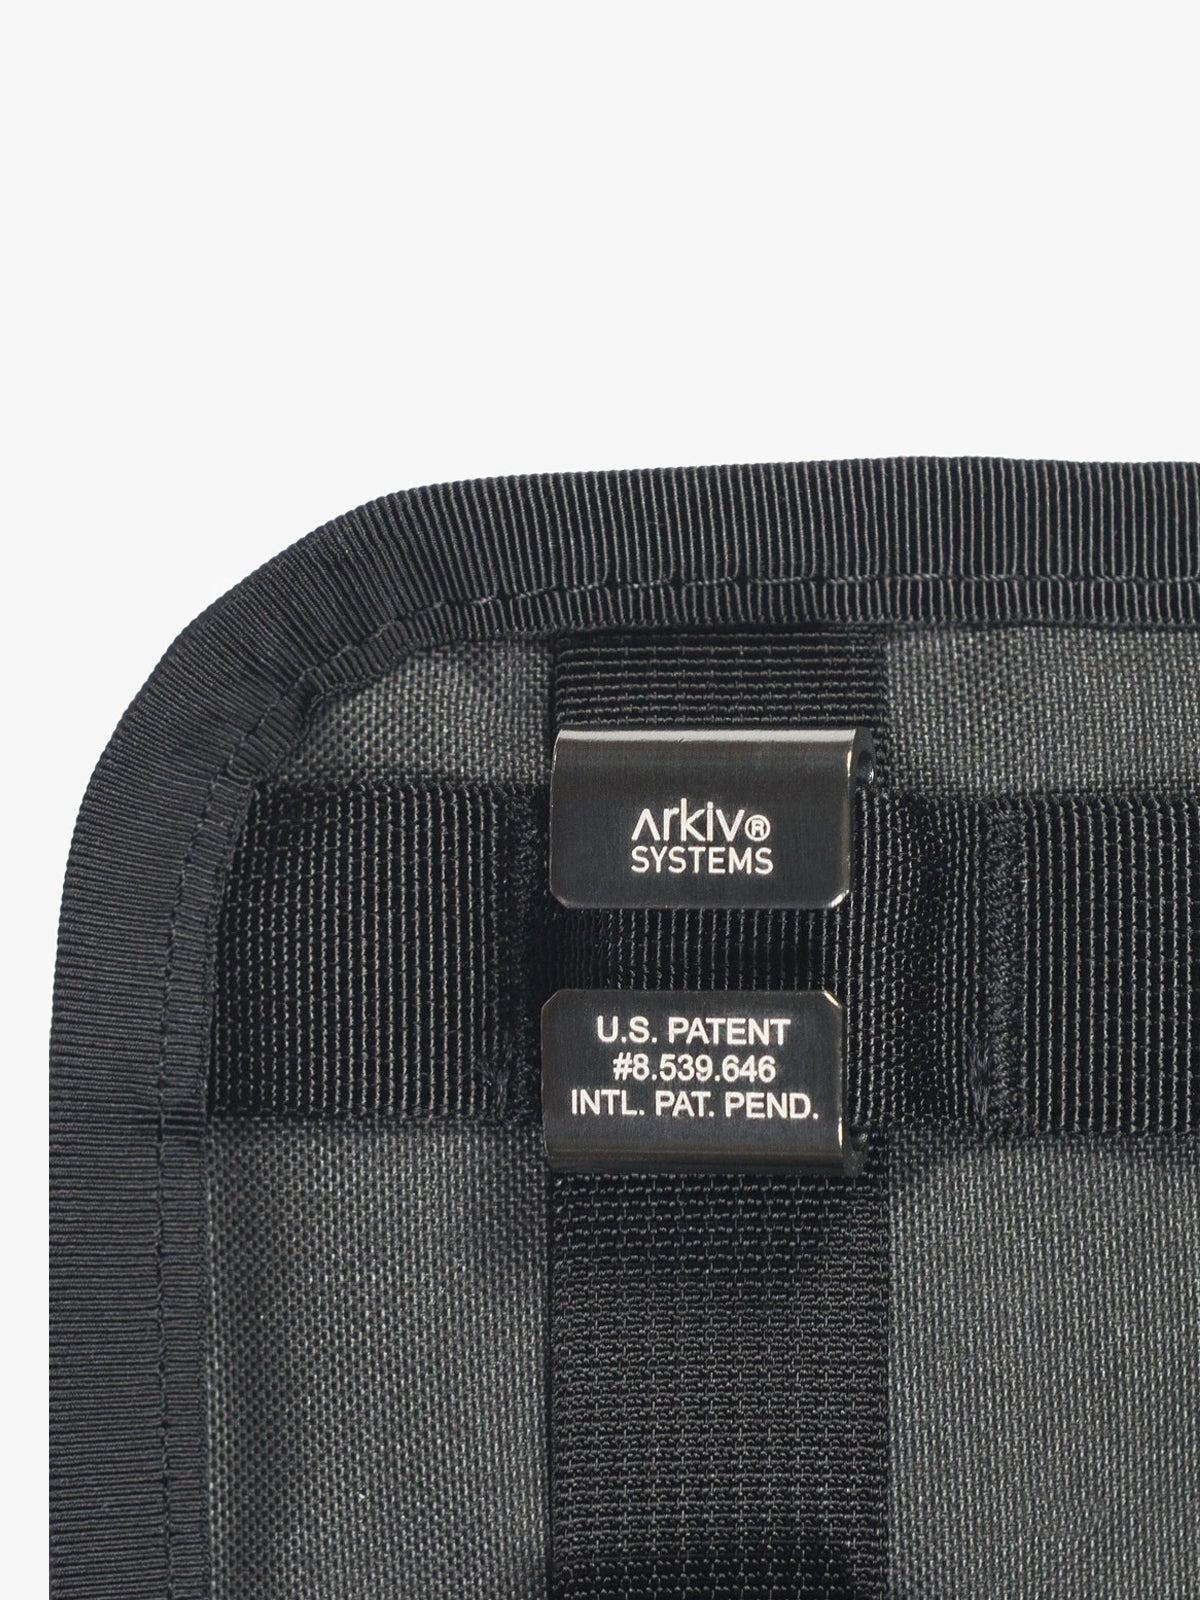 Arkiv Vertical Zippered Pocket från Mission Workshop - vädertåliga väskor och tekniska kläder - San Francisco och Los Angeles - byggda för att tåla - garanterade för alltid